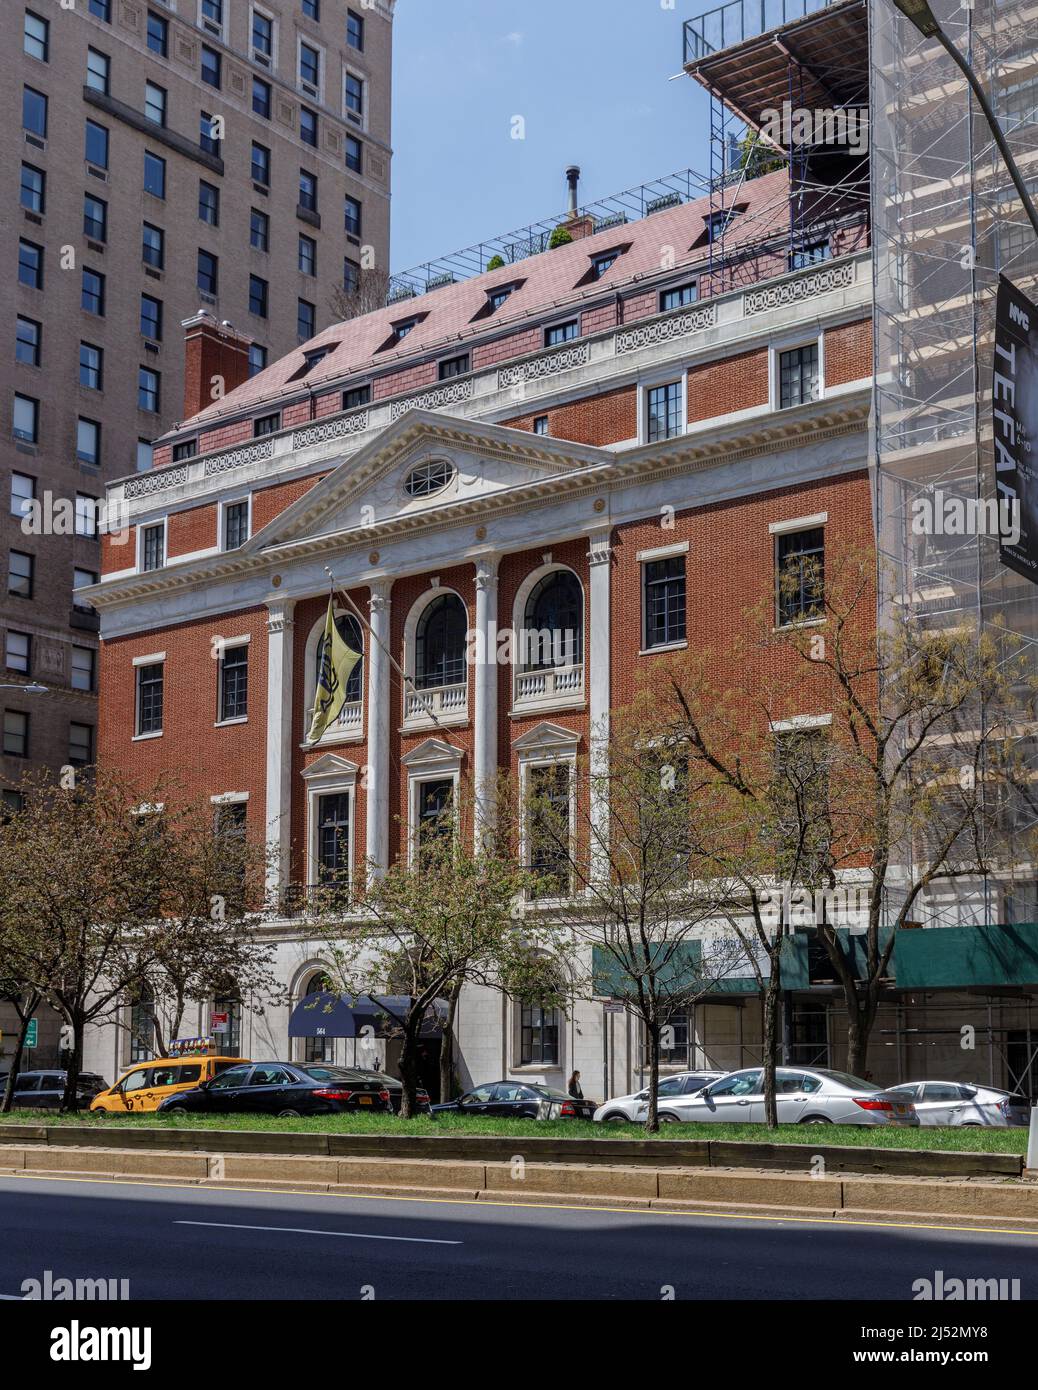 Le Colony Club, premier club social créé par et pour les femmes, leur deuxième pavillon, 1916. Upper East Side, New York, NY, États-Unis. Banque D'Images